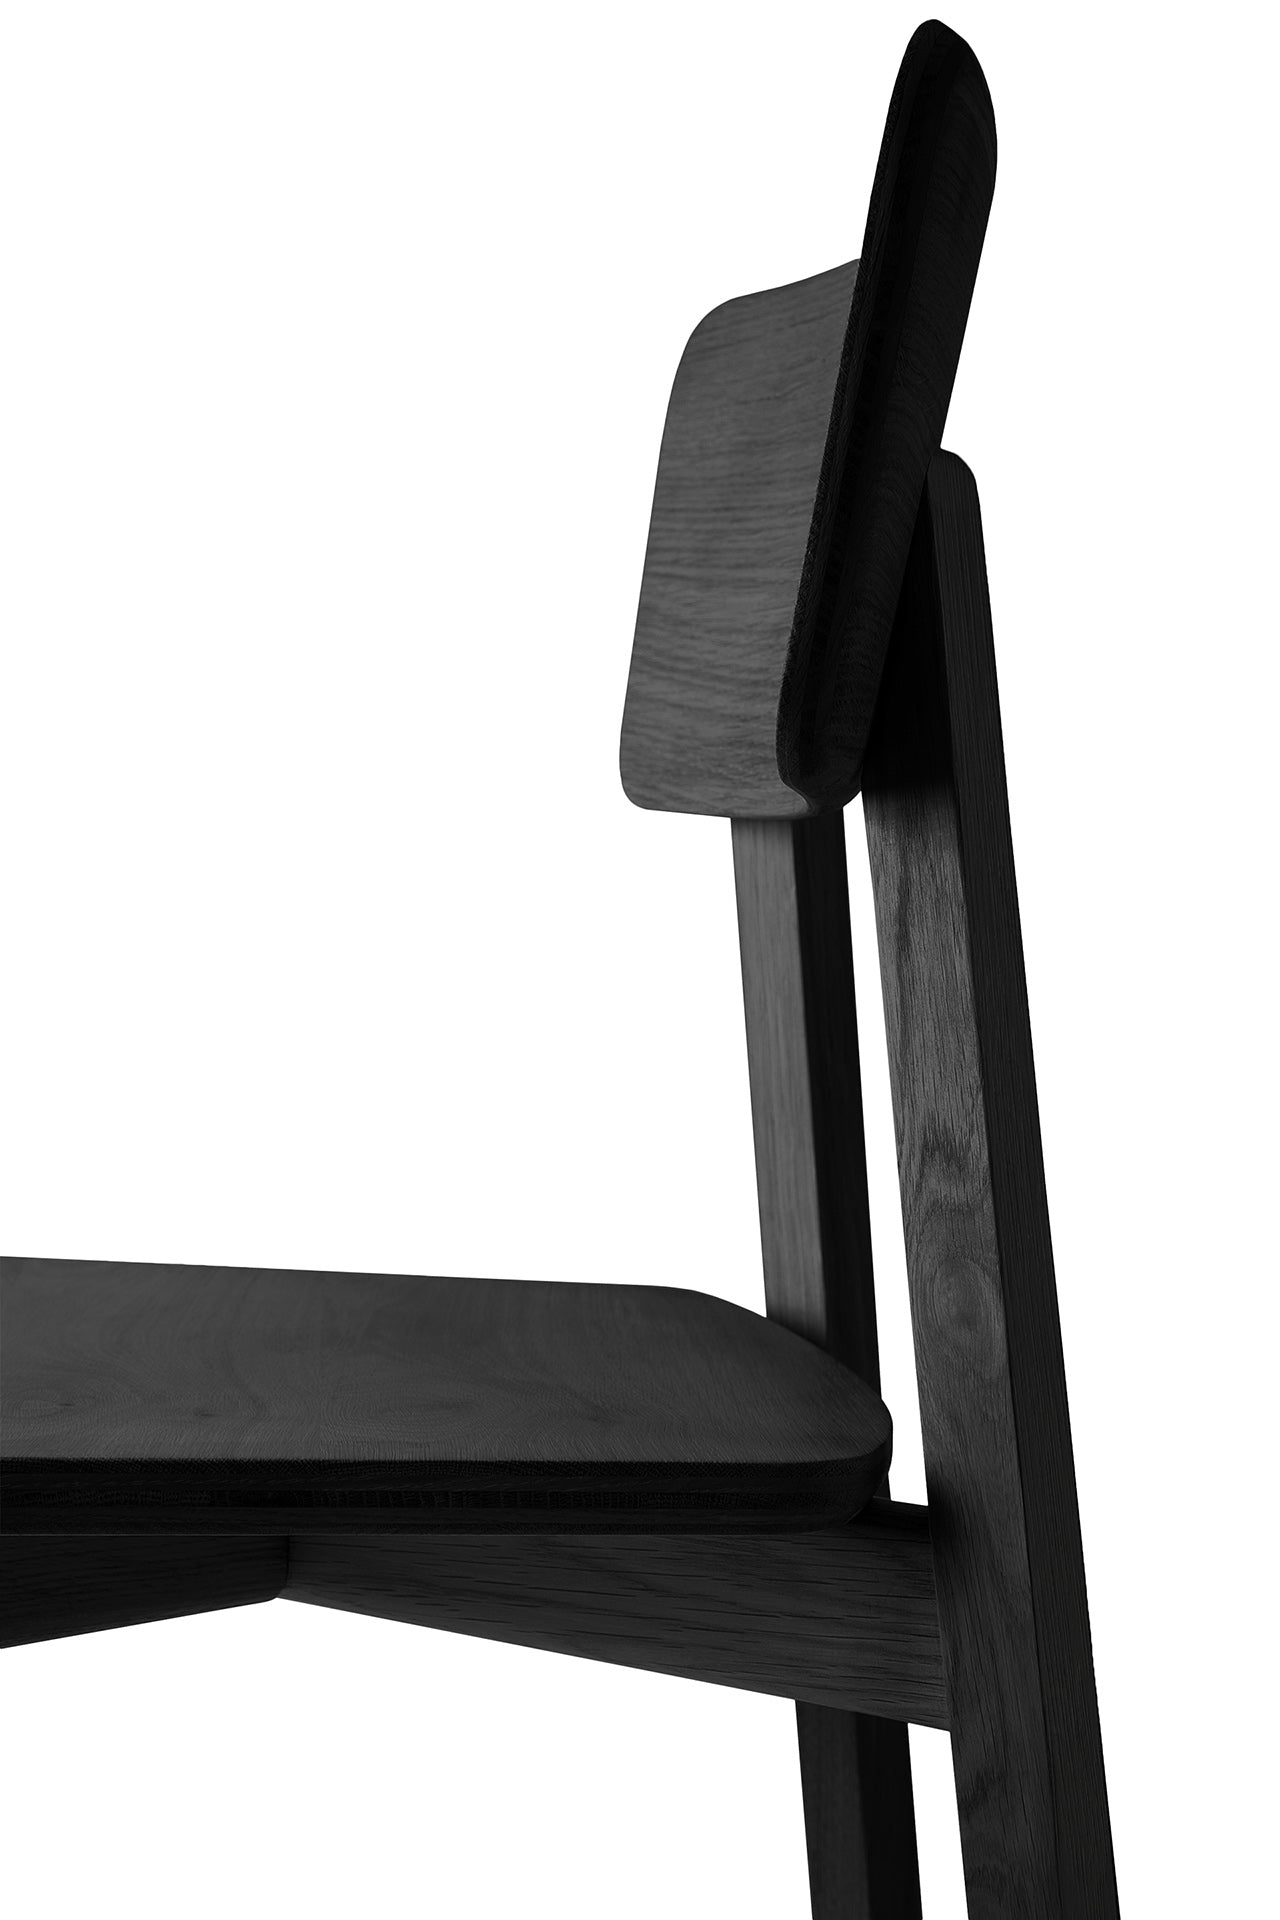 Casale Dining Chair, Black Oak